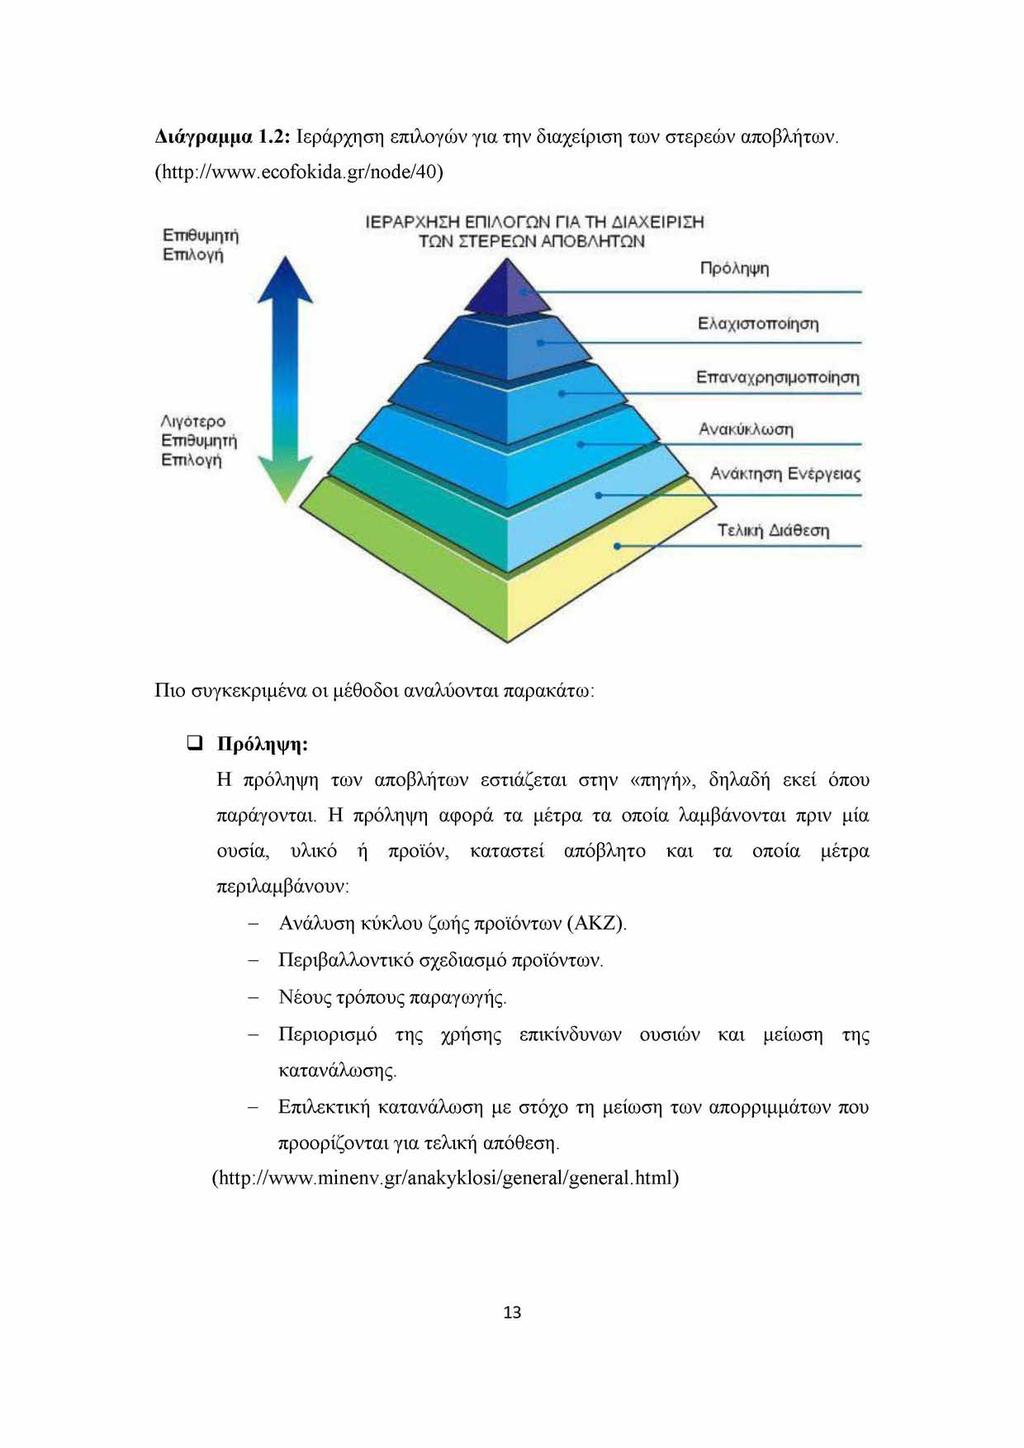 Διάγραμμα 1.2: Ιεράρχηση επιλογών για την διαχείριση των στερεών αποβλήτων. (http://www.ecofokida.